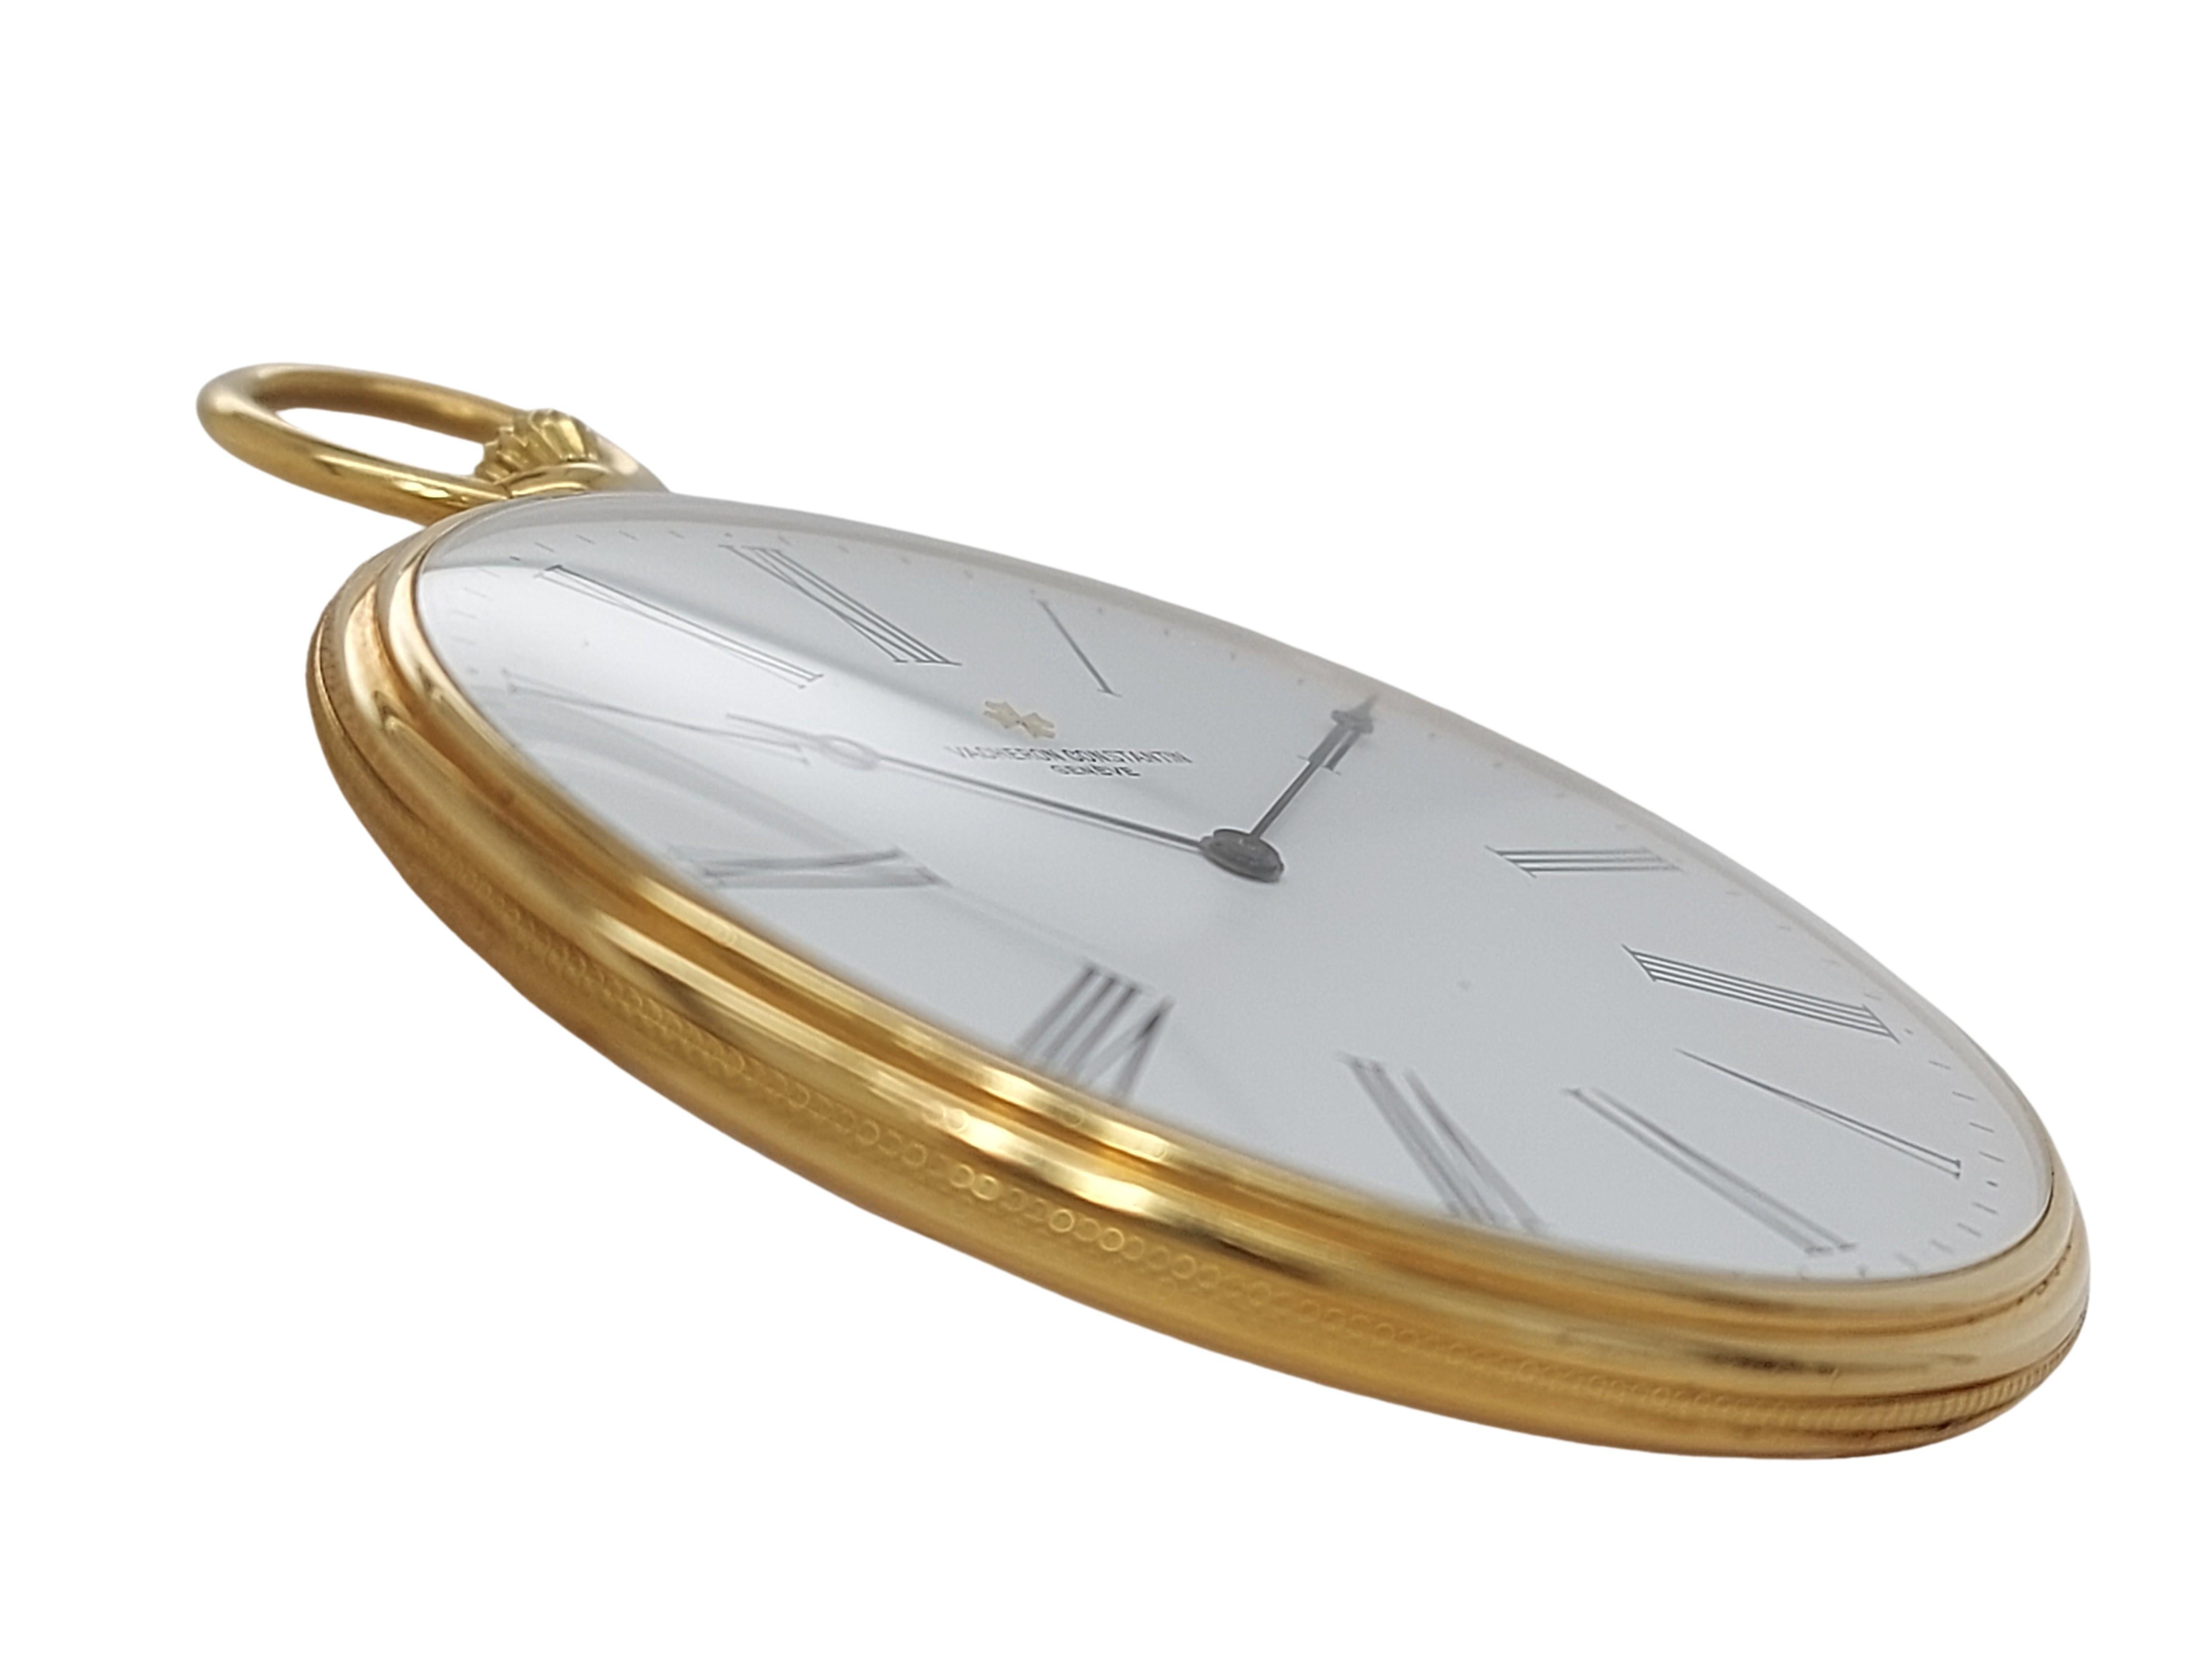 Artist 18kt Yellow Gold Vacheron Constantin Pocket Watch Cal 1015, 59001 Manual Winding